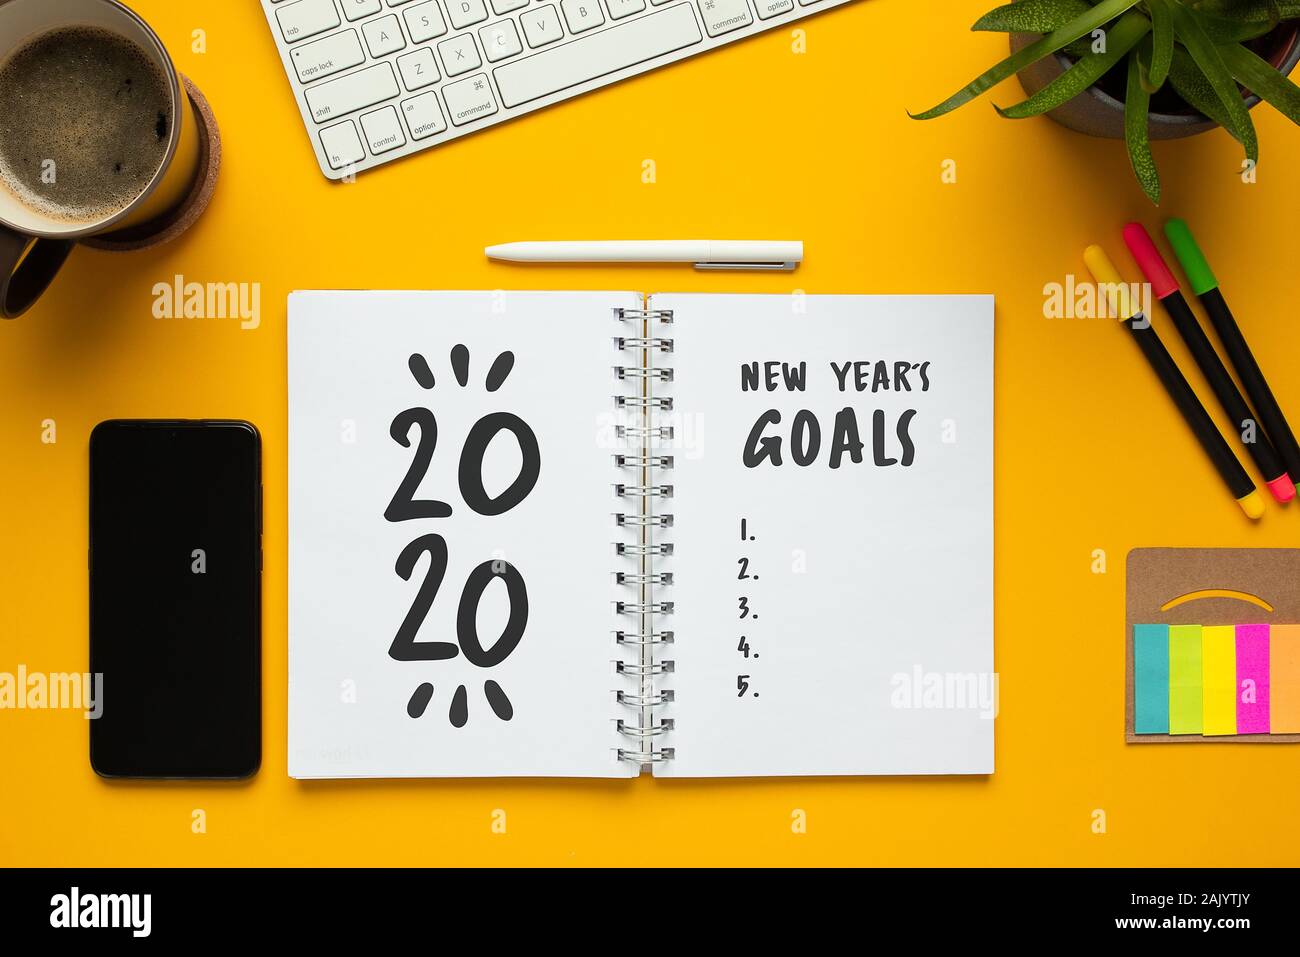 Fotografía de Stock de 2020 Año nuevo portátil con lista de metas y objetos sobre fondo amarillo Foto de stock